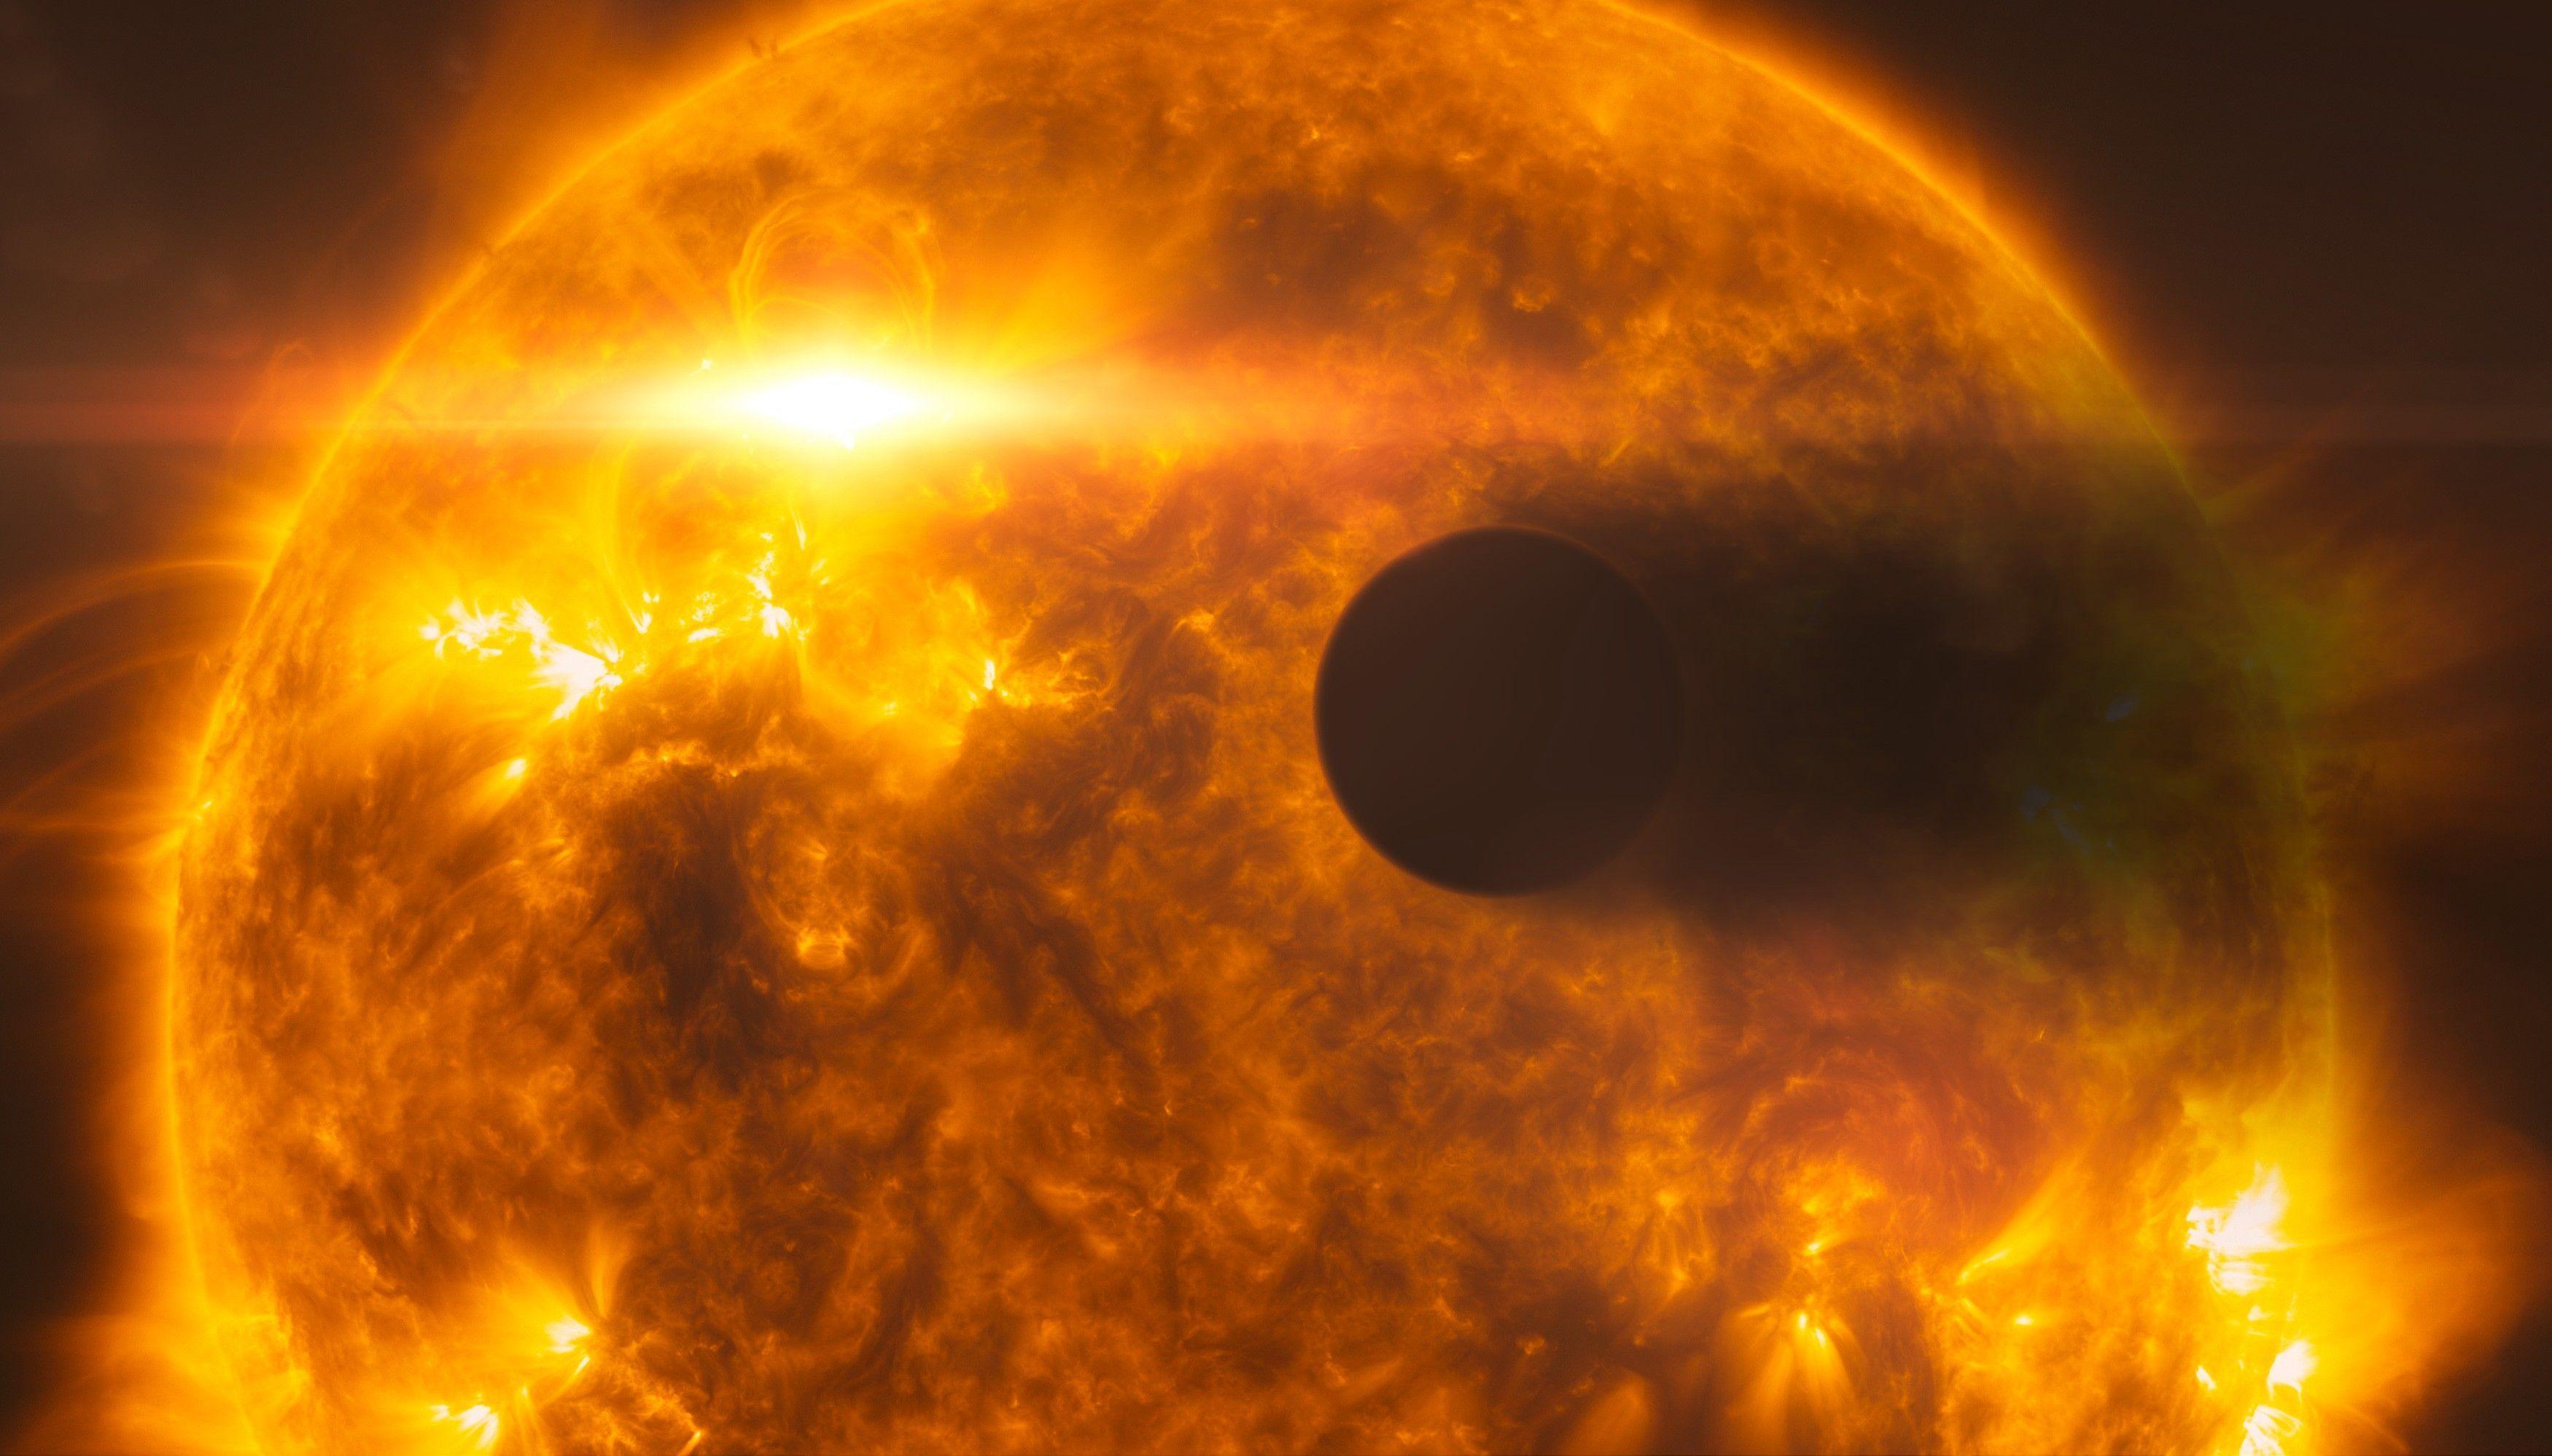 290万年后,宇宙最黑行星将坠毁在恒星上,灰飞烟灭